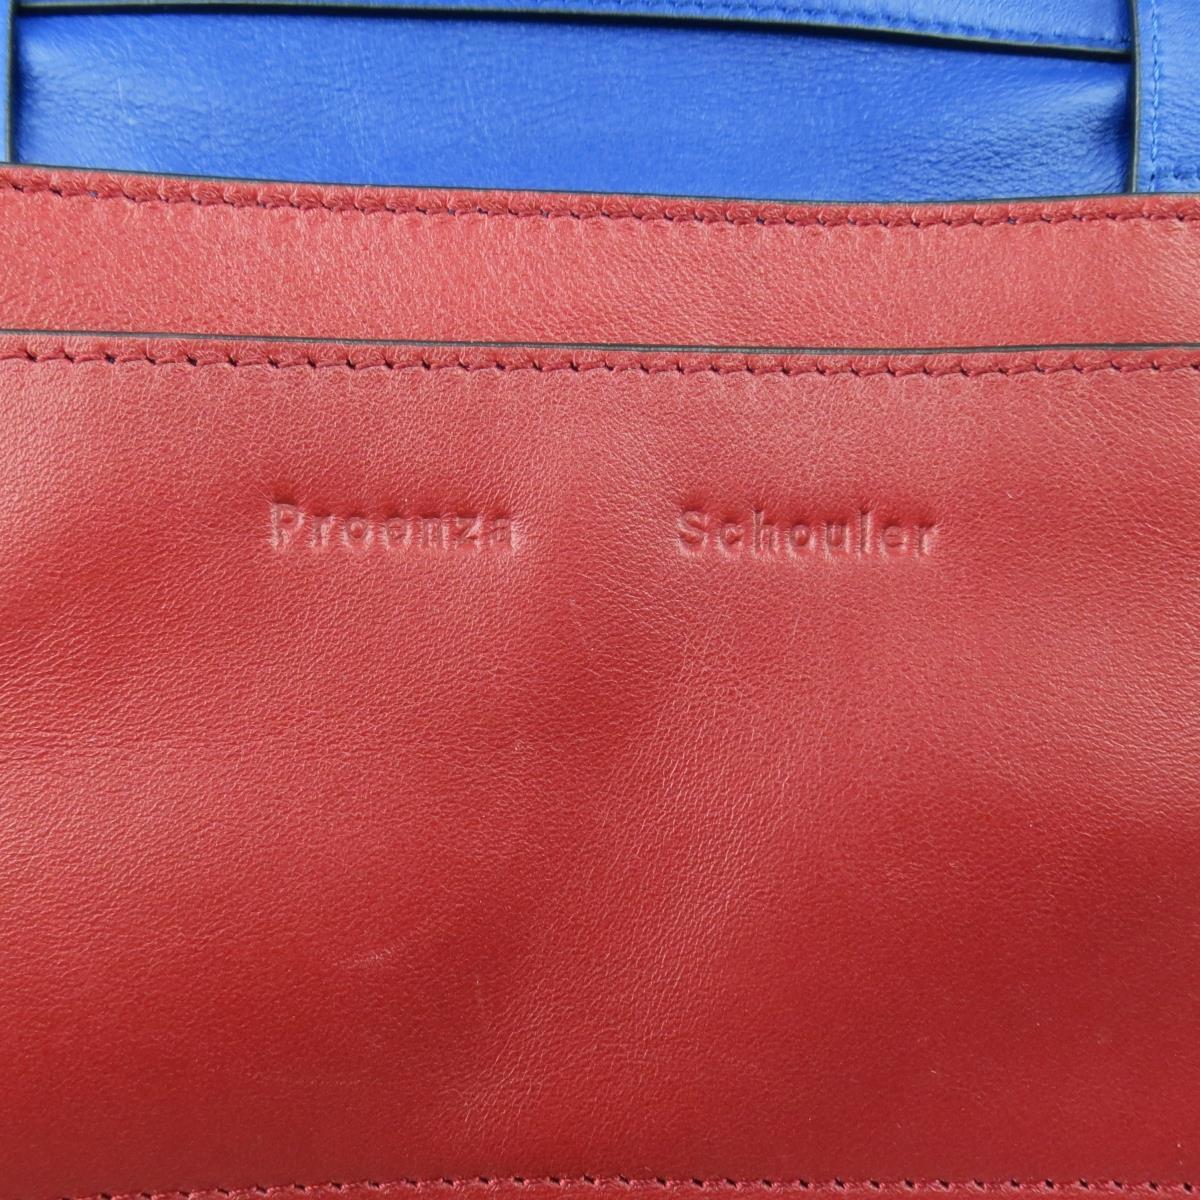 PROENZA SCHOULER Red & Blue Color Block Leather Shoulder Bag 6